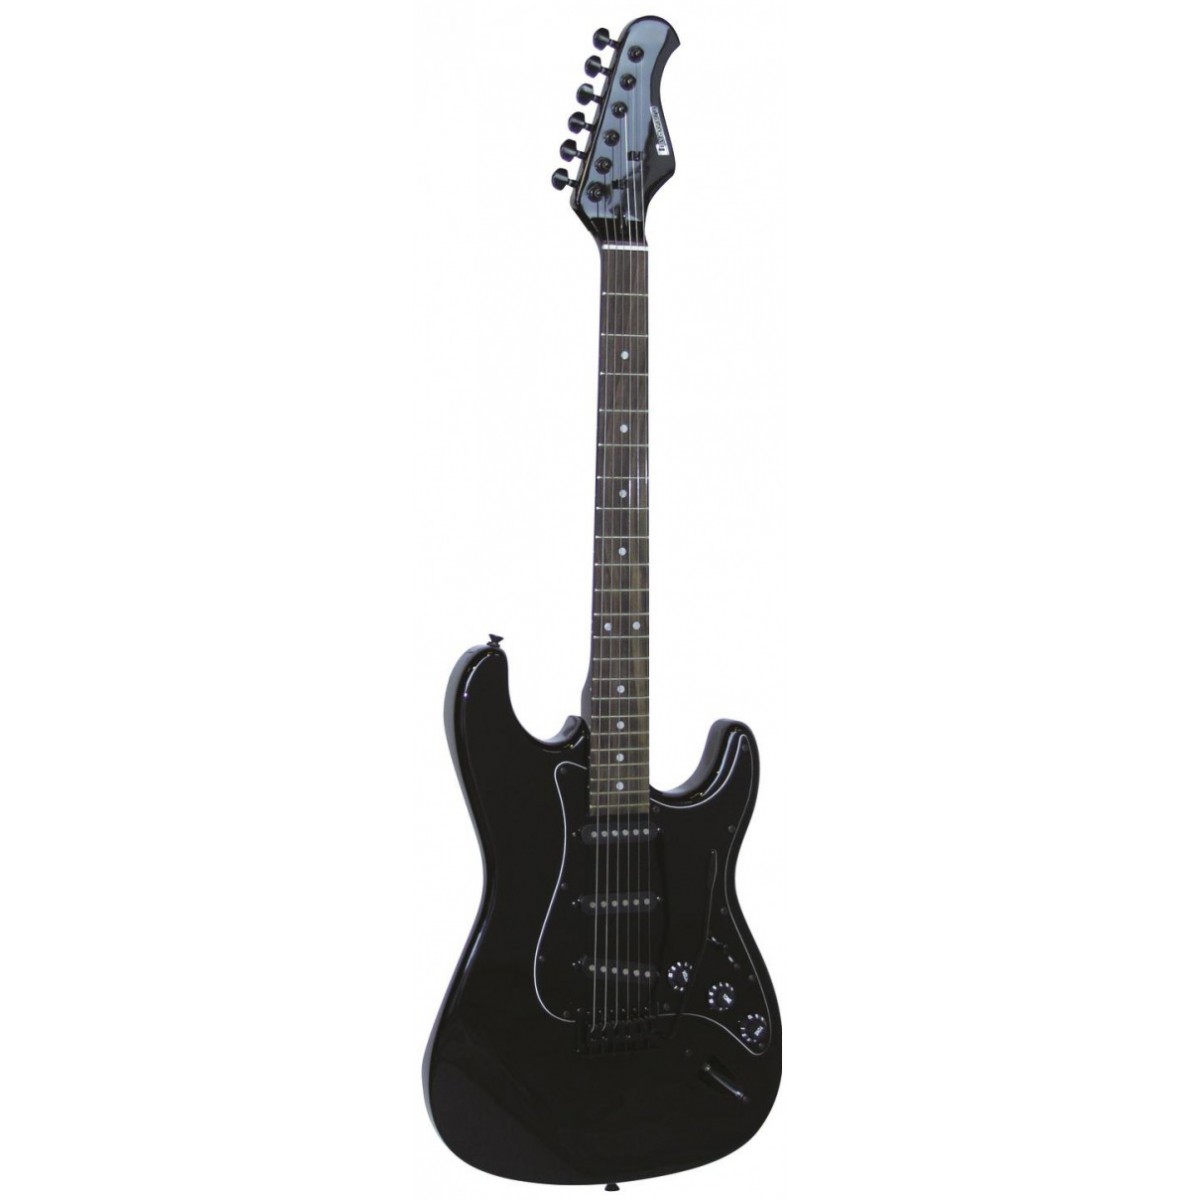 Dimavery elektrická kytara ST-203 černá gothik